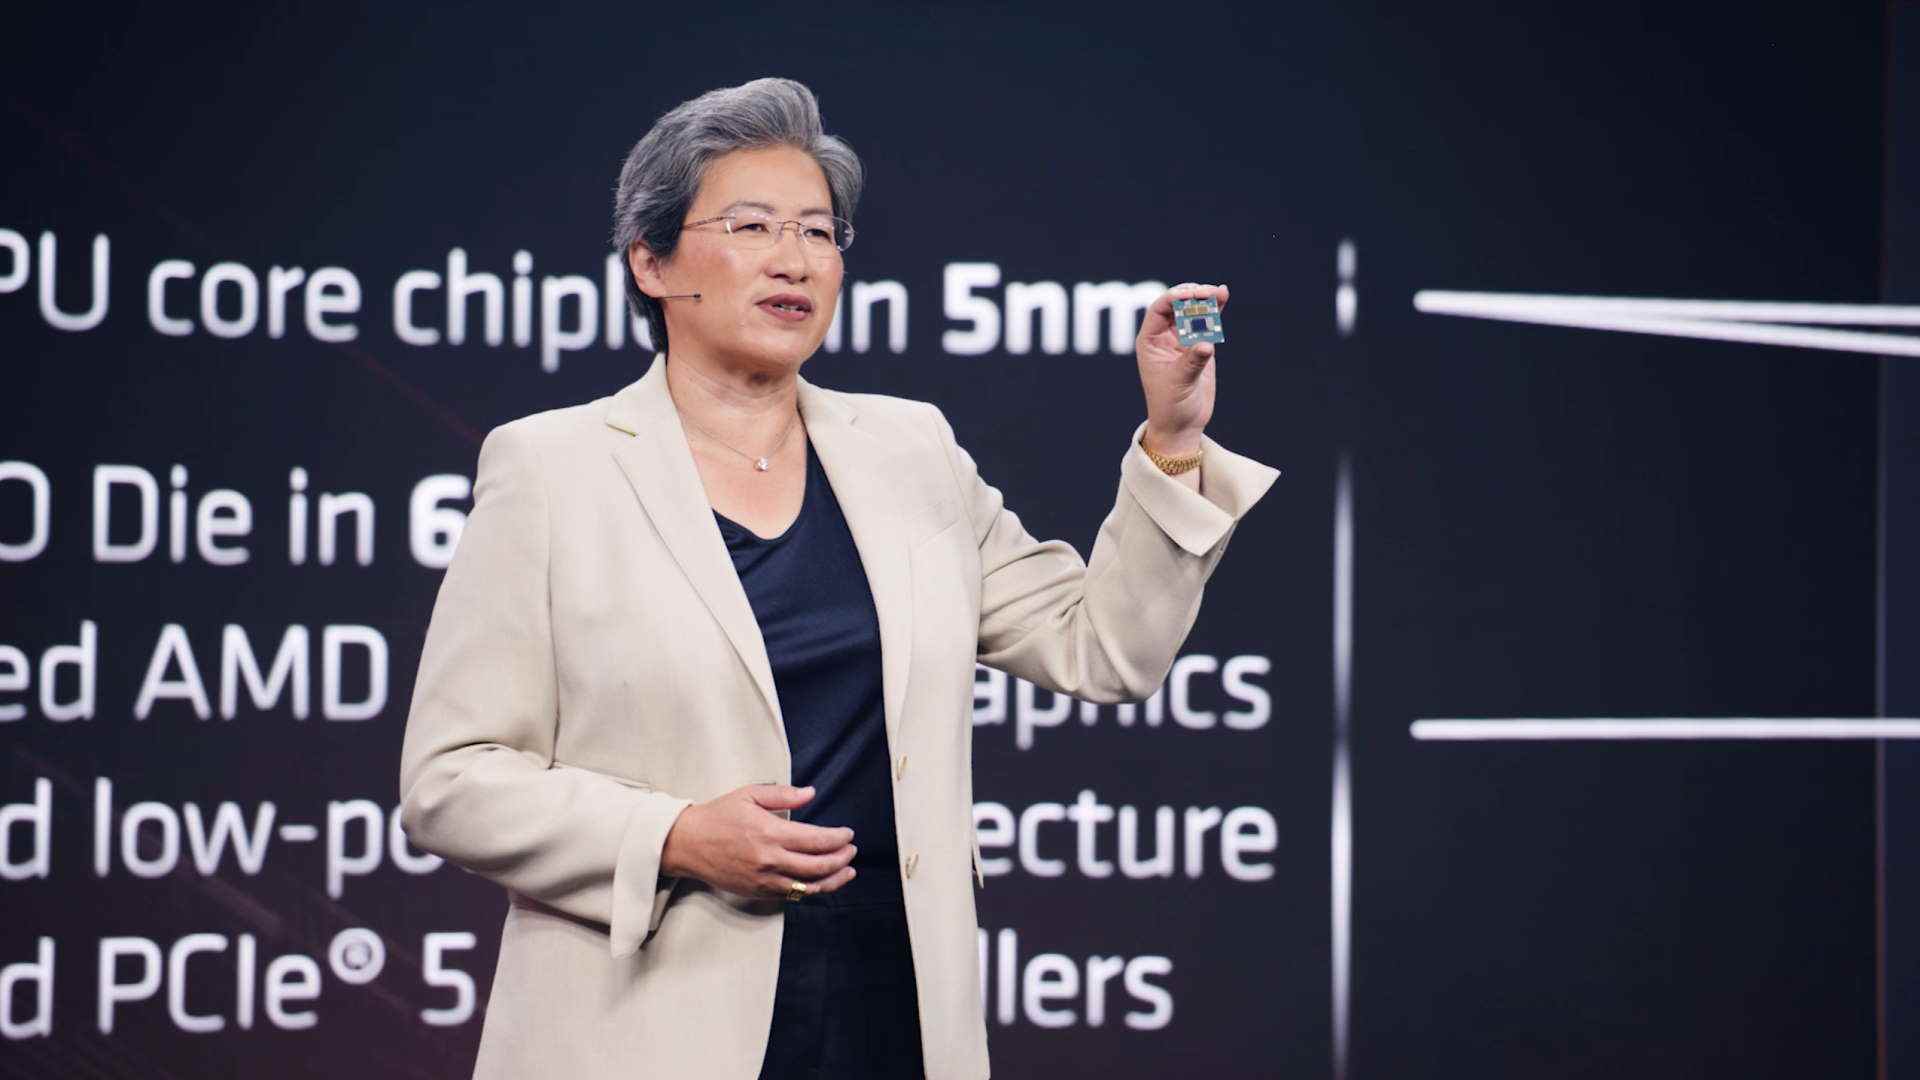 Le PDG d'AMD, le Dr Lisa Su, présente les nouveaux processeurs Ryzen de la série 7000